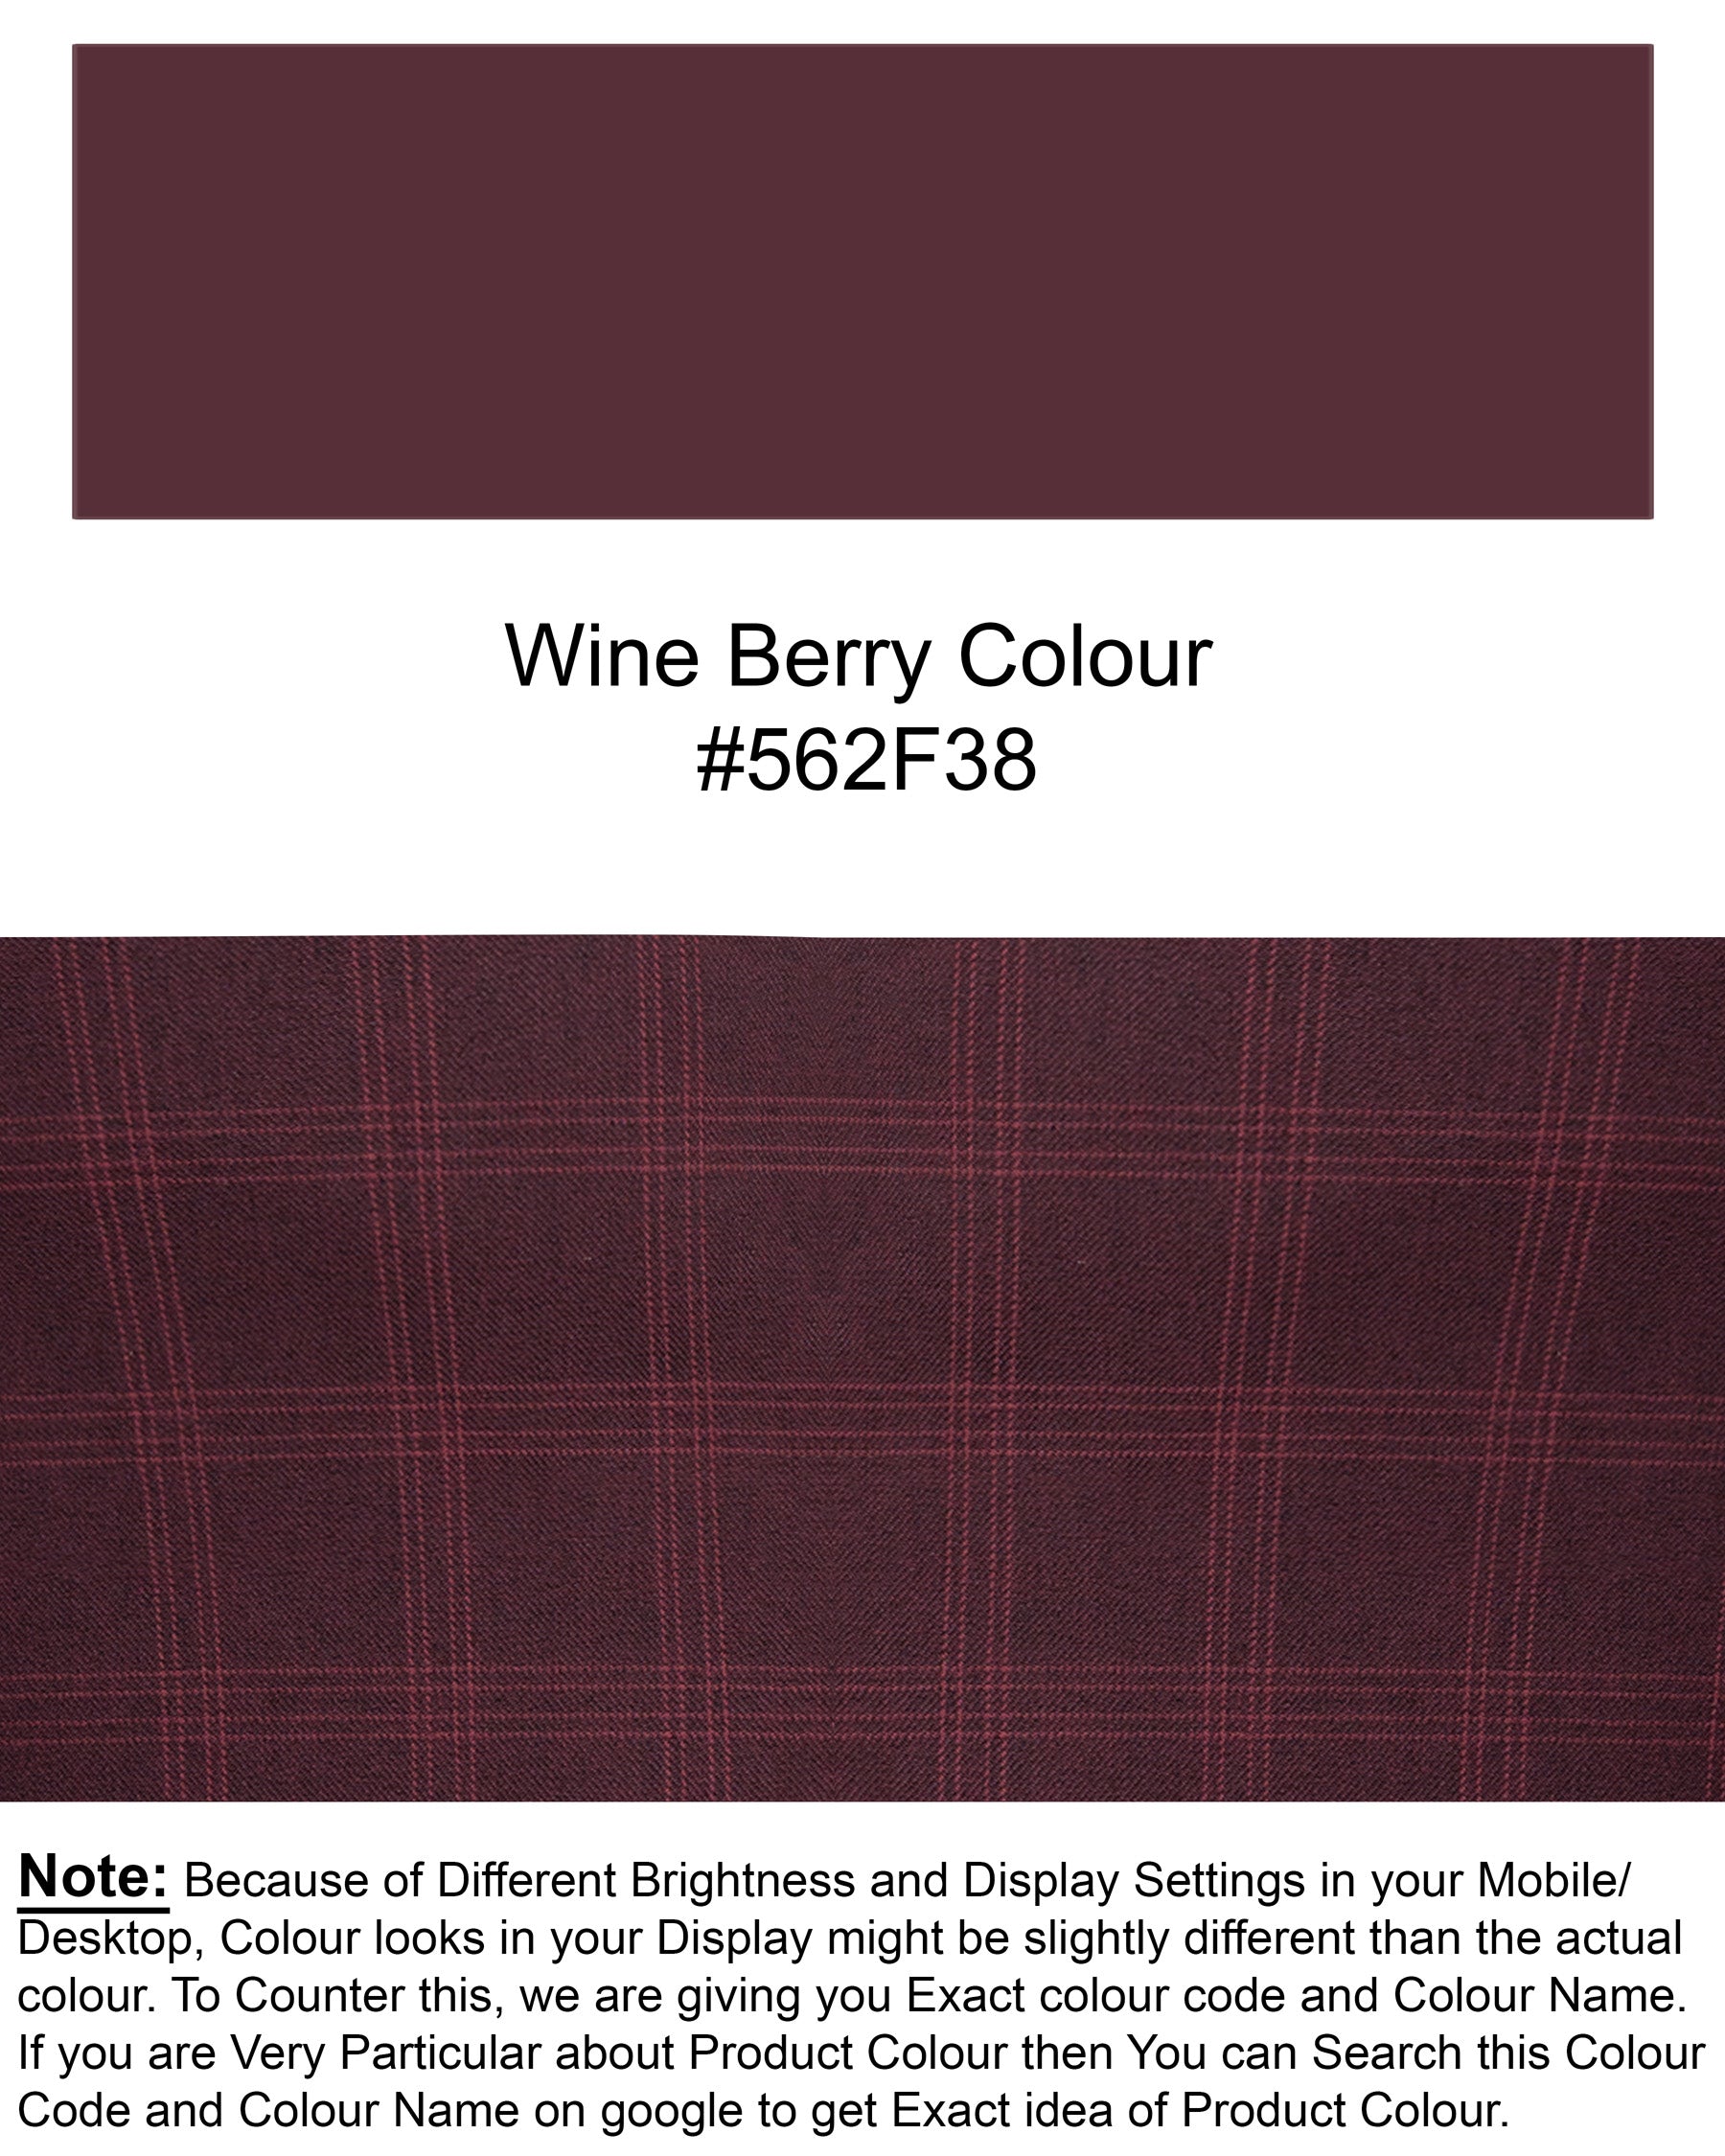 Half wine Checkered Wool Rich and Half White Premium Cotton Suit ST1586-SBP-D26-36, ST1586-SBP-D26-38, ST1586-SBP-D26-40, ST1586-SBP-D26-42, ST1586-SBP-D26-44, ST1586-SBP-D26-46, ST1586-SBP-D26-48, ST1586-SBP-D26-50, ST1586-SBP-D26-52, ST1586-SBP-D26-54, ST1586-SBP-D26-56, ST1586-SBP-D26-58, ST1586-SBP-D26-60